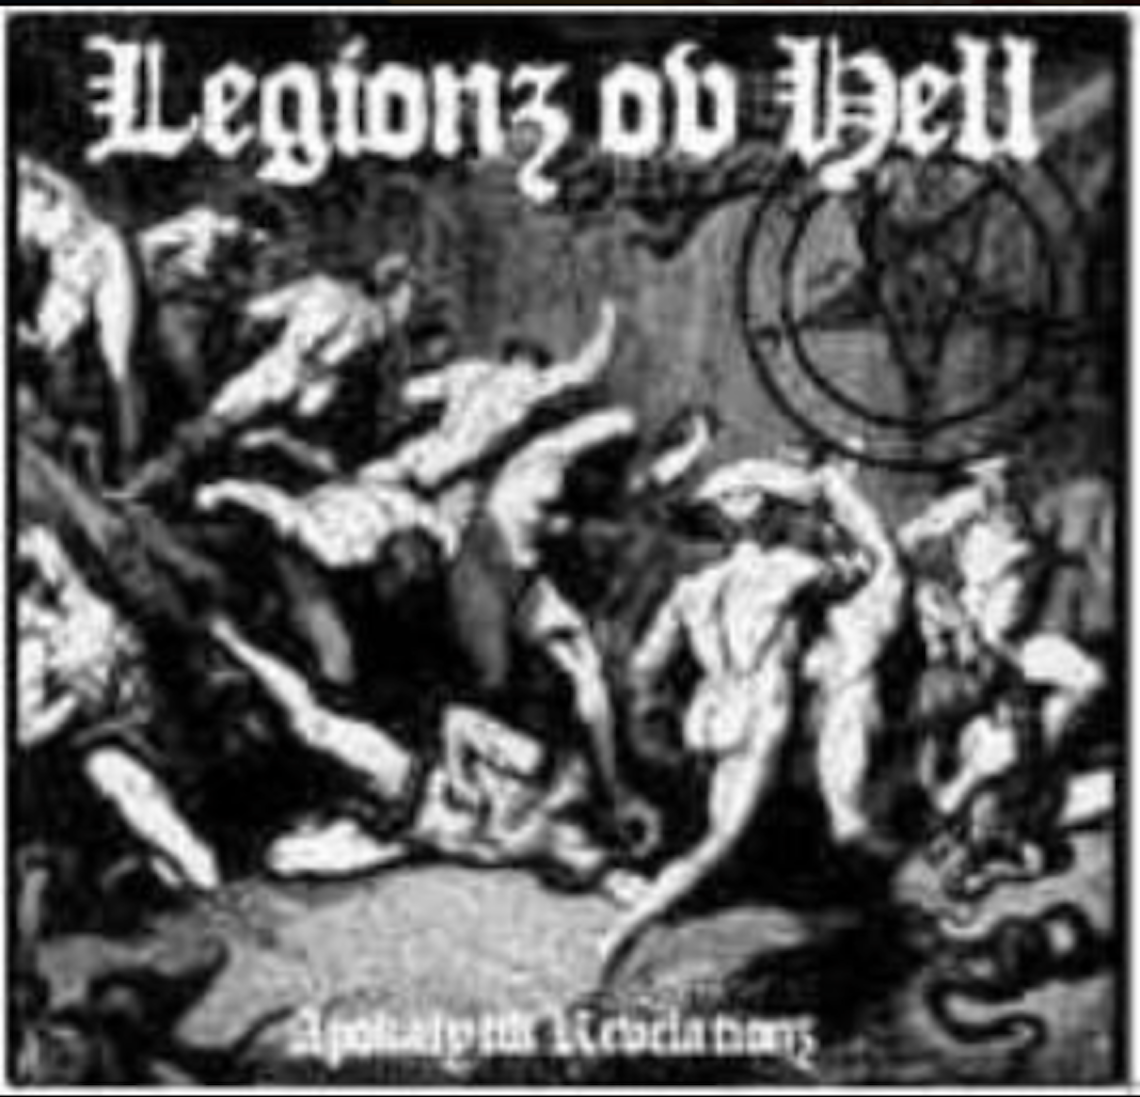 legionz-ov-hell